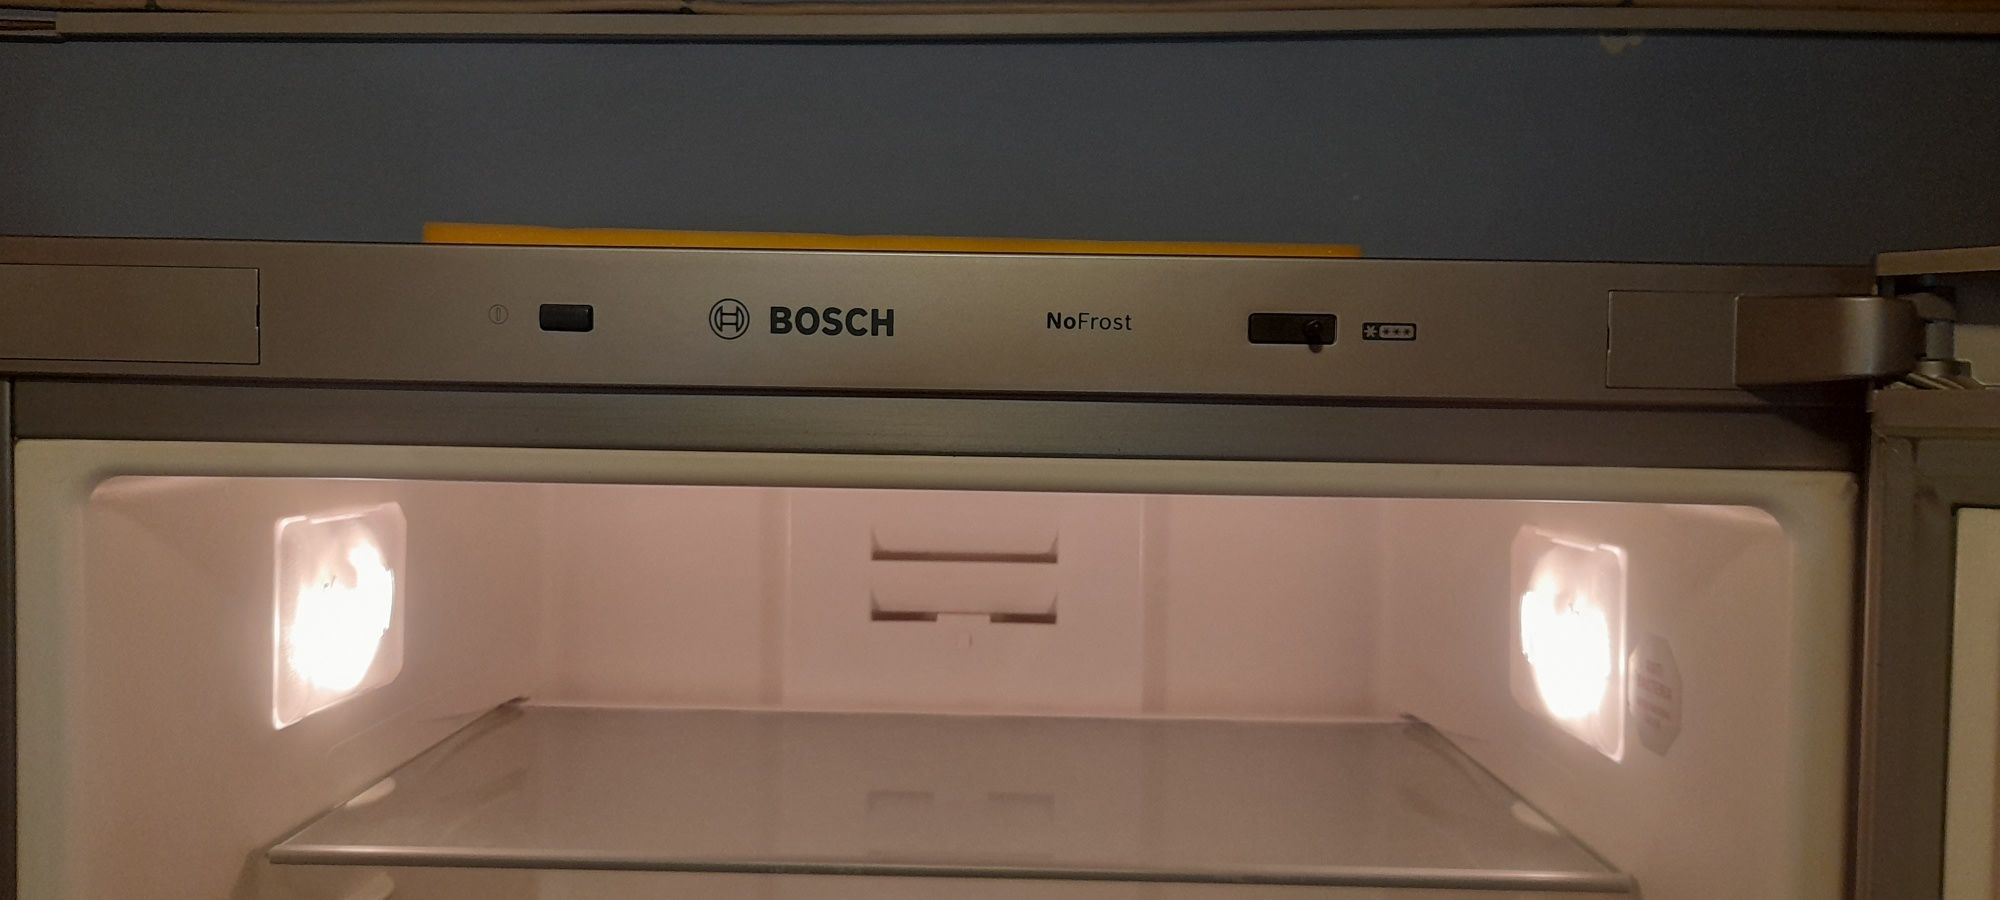 Combina frigorifica Bosch mare 450L frigider